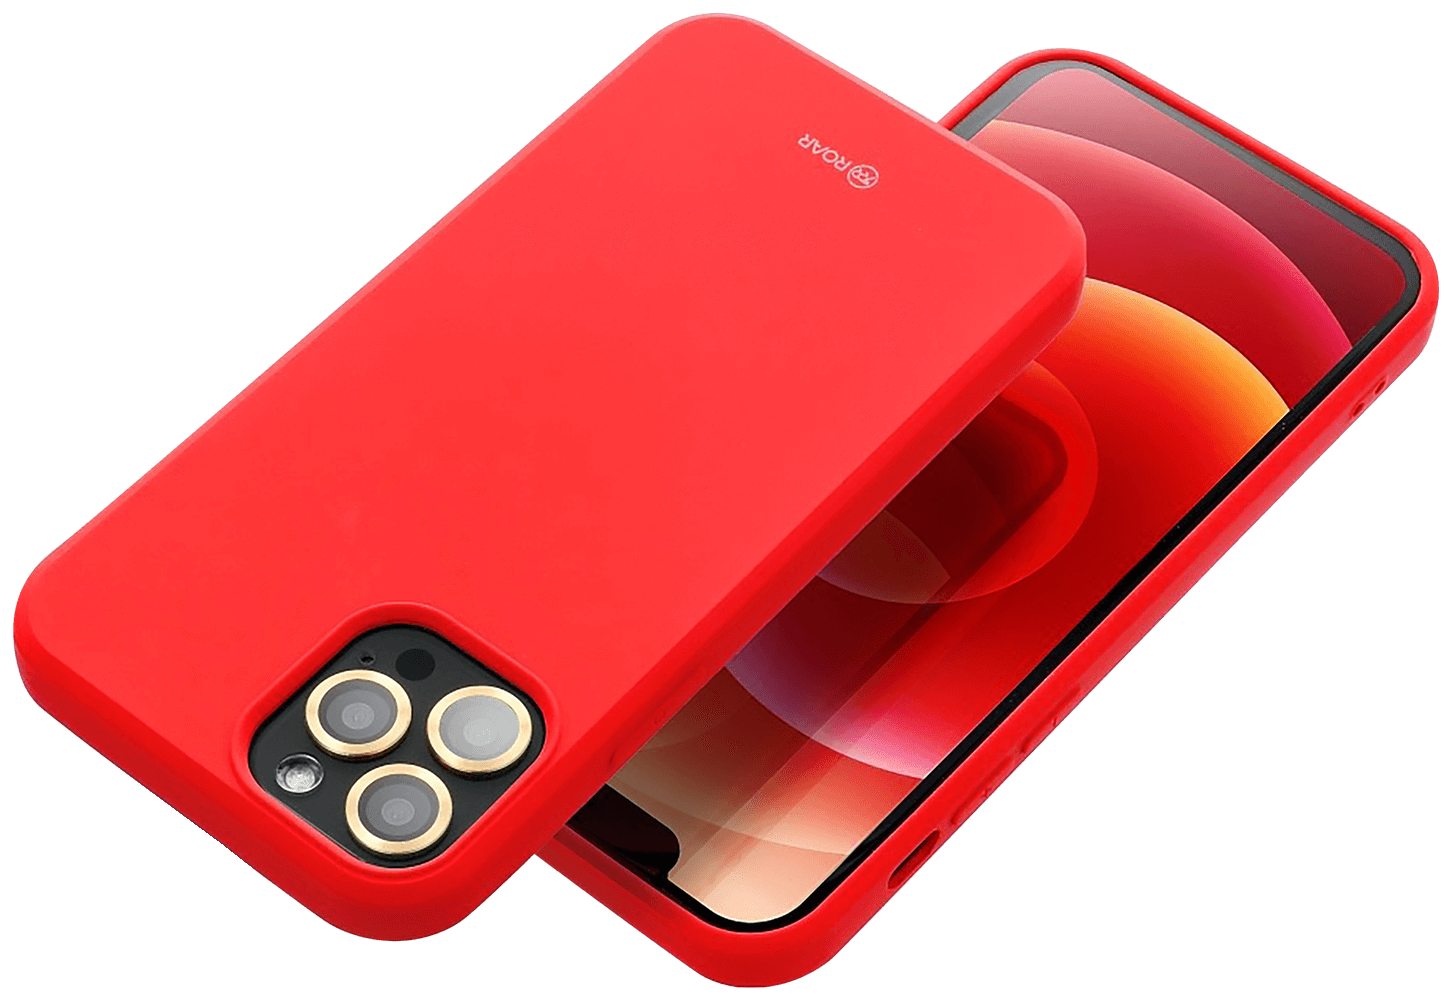 Apple iPhone 14 Pro Max szilikon tok gyári ROAR piros